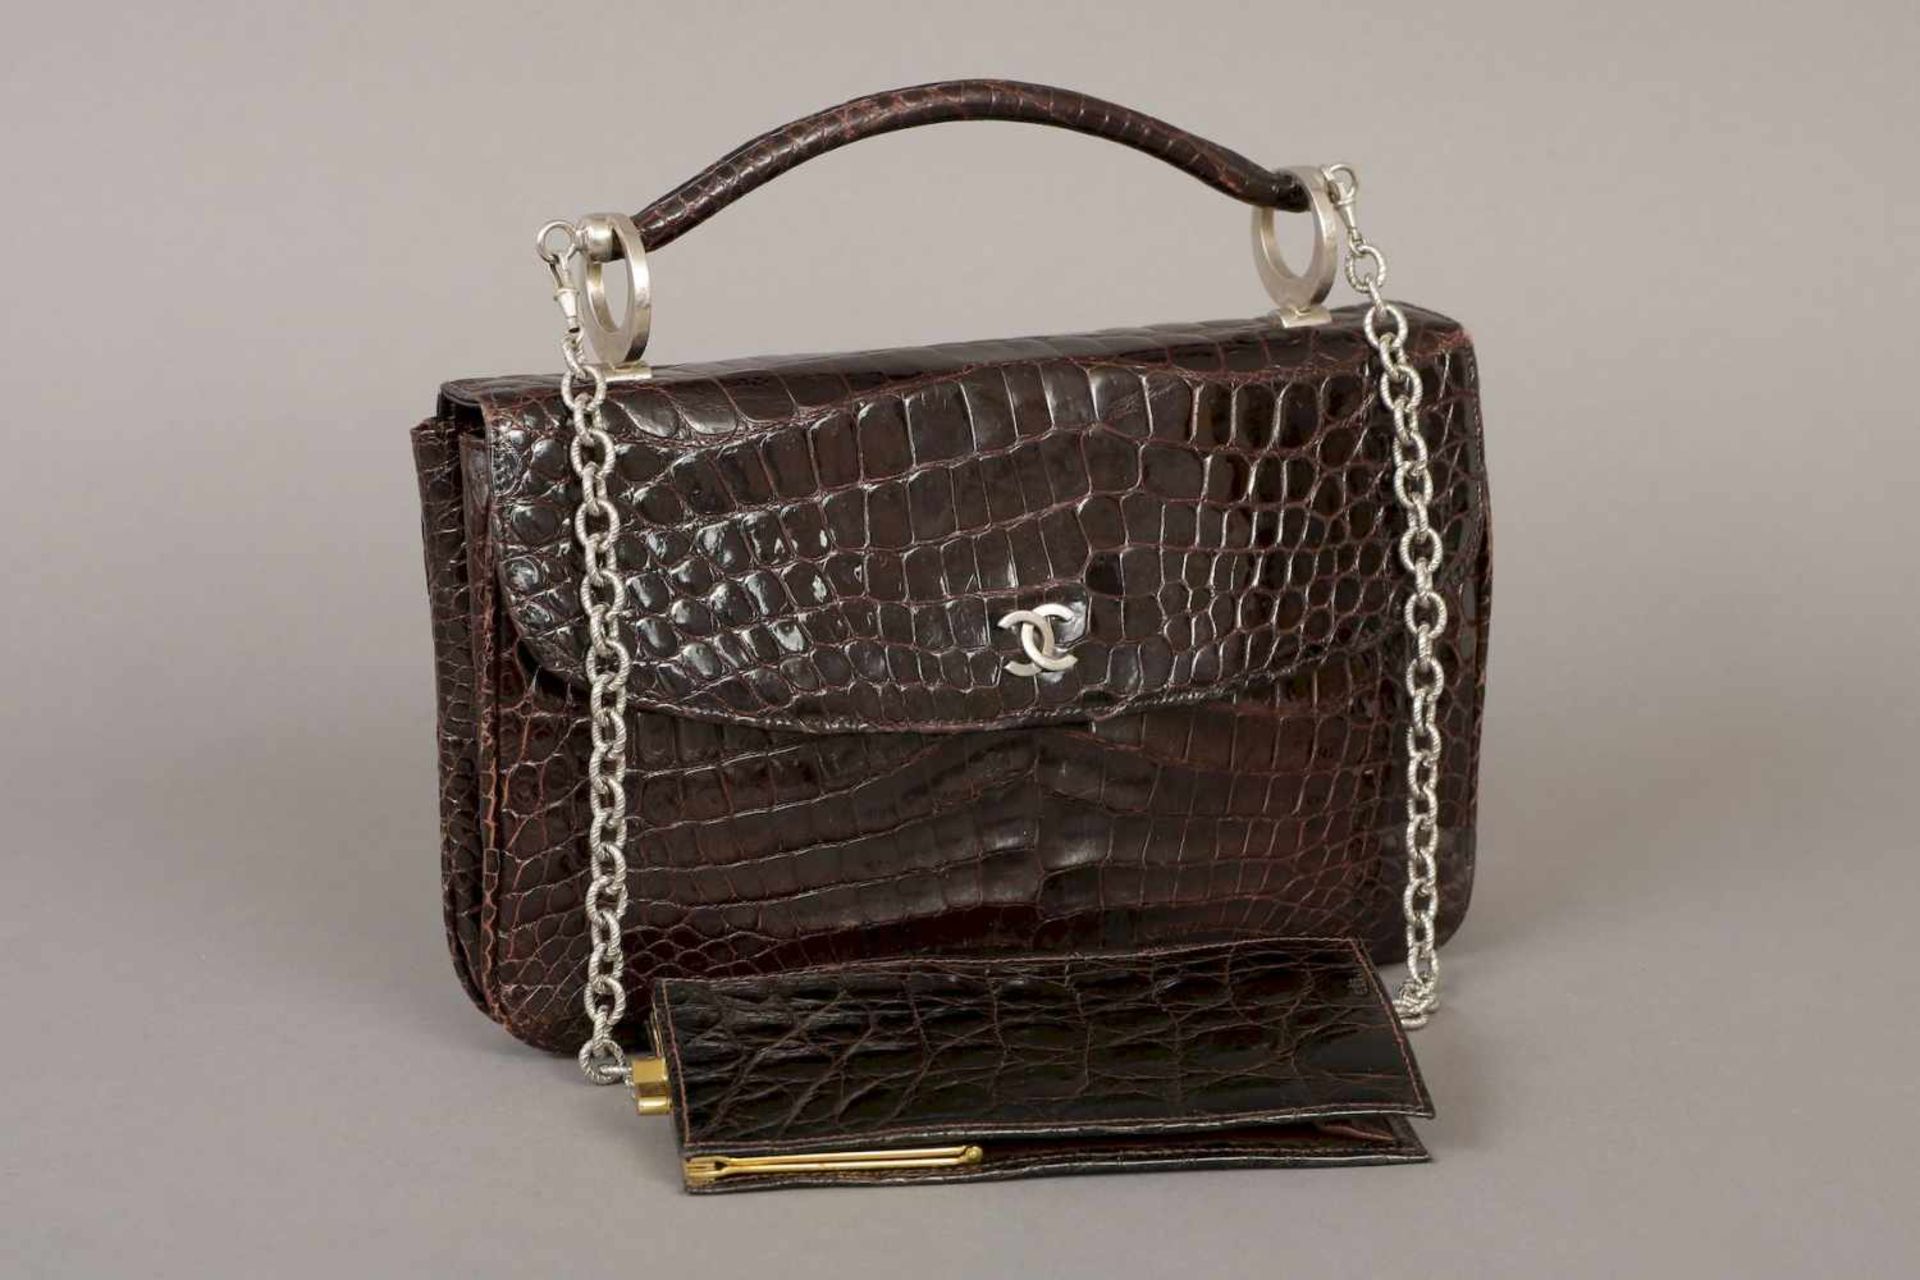 CHANEL Vintage HandtascheKrokodilleder, dunkelbraun, um 1950-60 (1964 gebraucht gekauft),